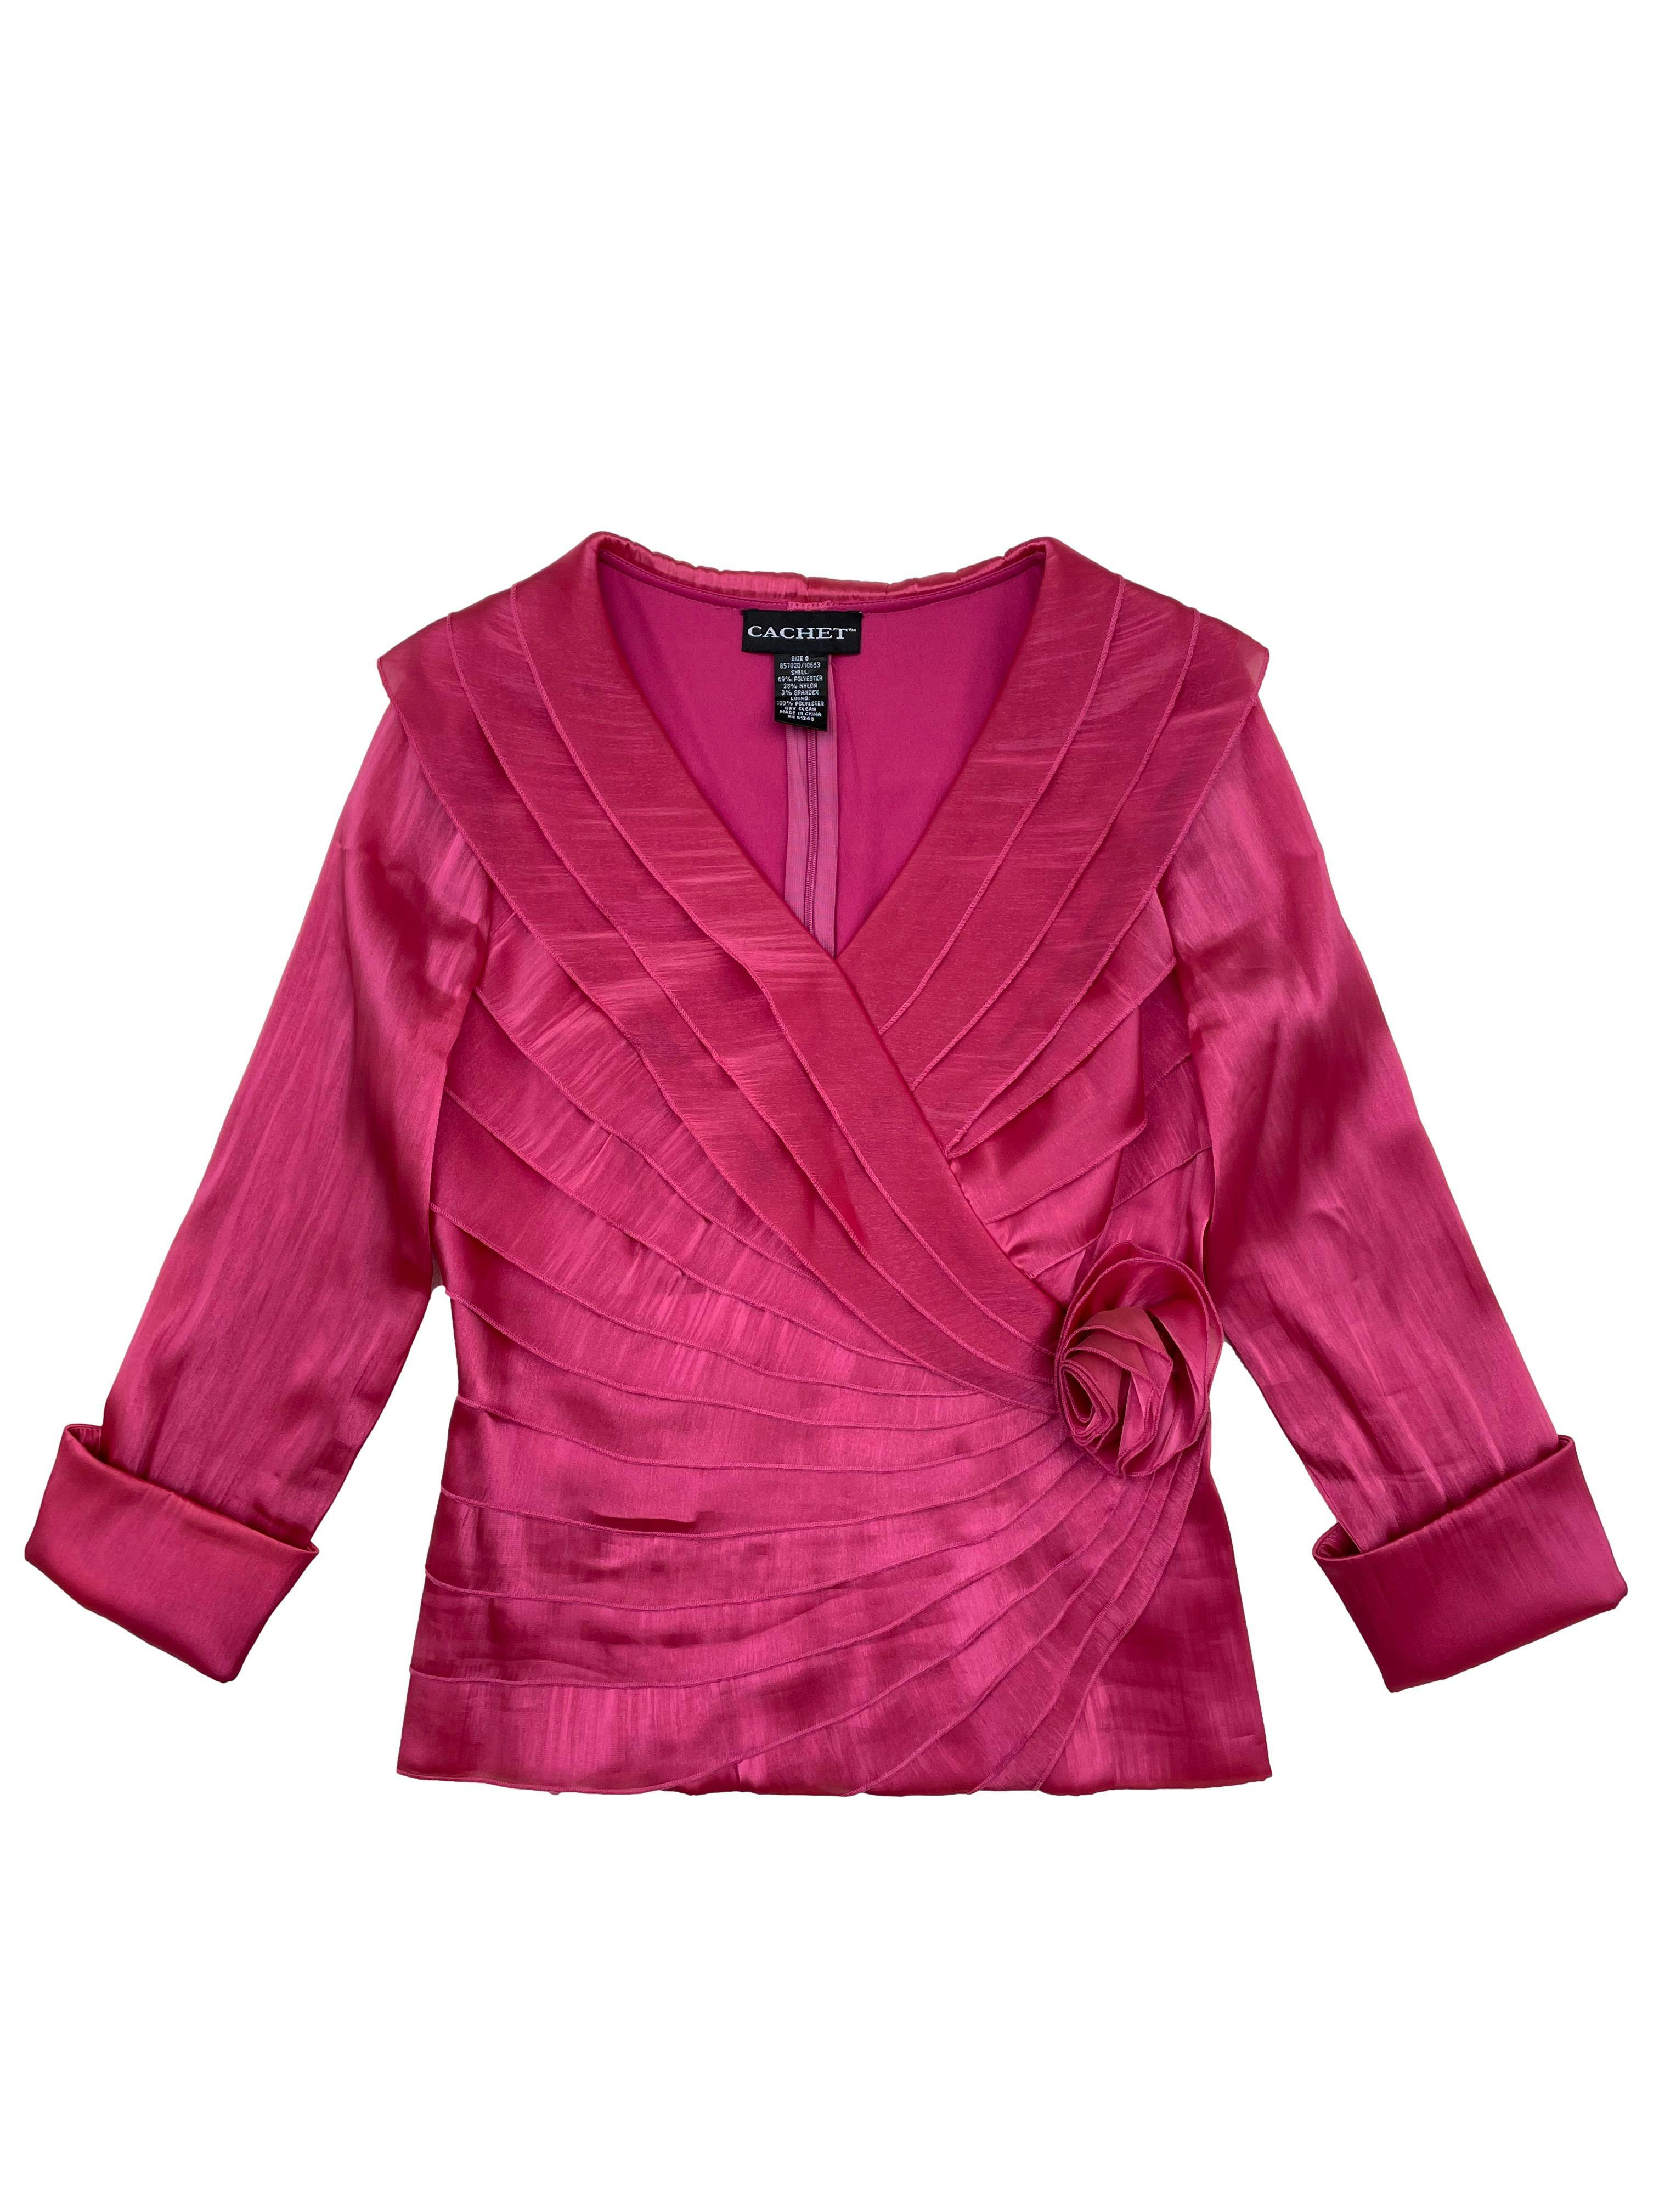 Blusa vintage Cachet de raso fucsia satinado, escote cruzado con rosa, forro y cierre posterior invisible. Busto 100cm, Largo 58cm.